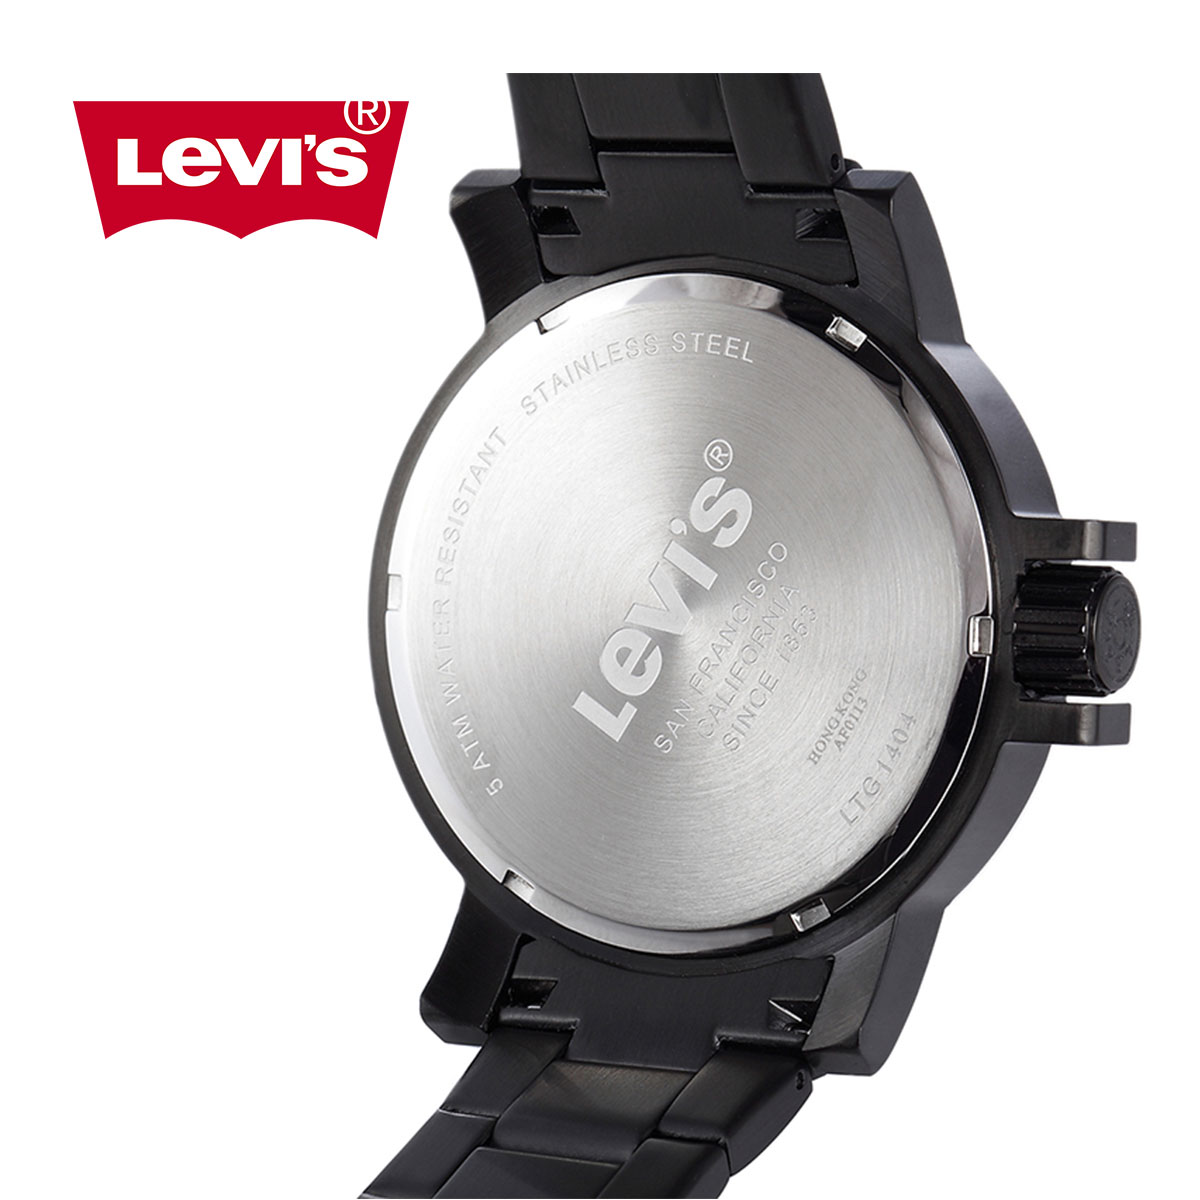 Đồng hồ nam Levis LTG1404 núm chỉnh giờ to bản